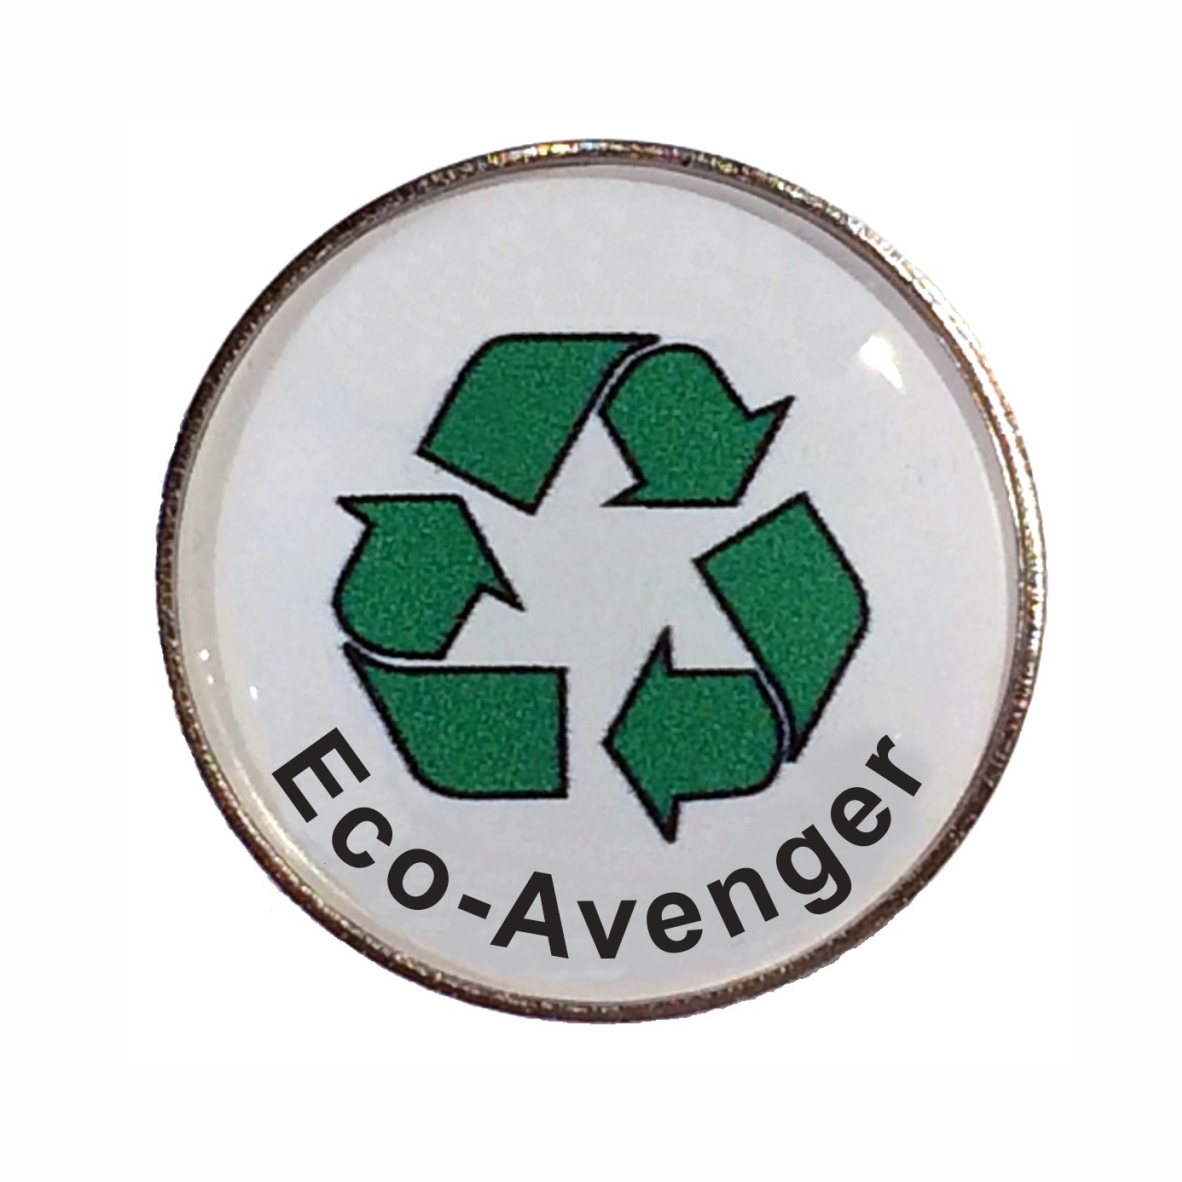 Eco-Avenger round badge